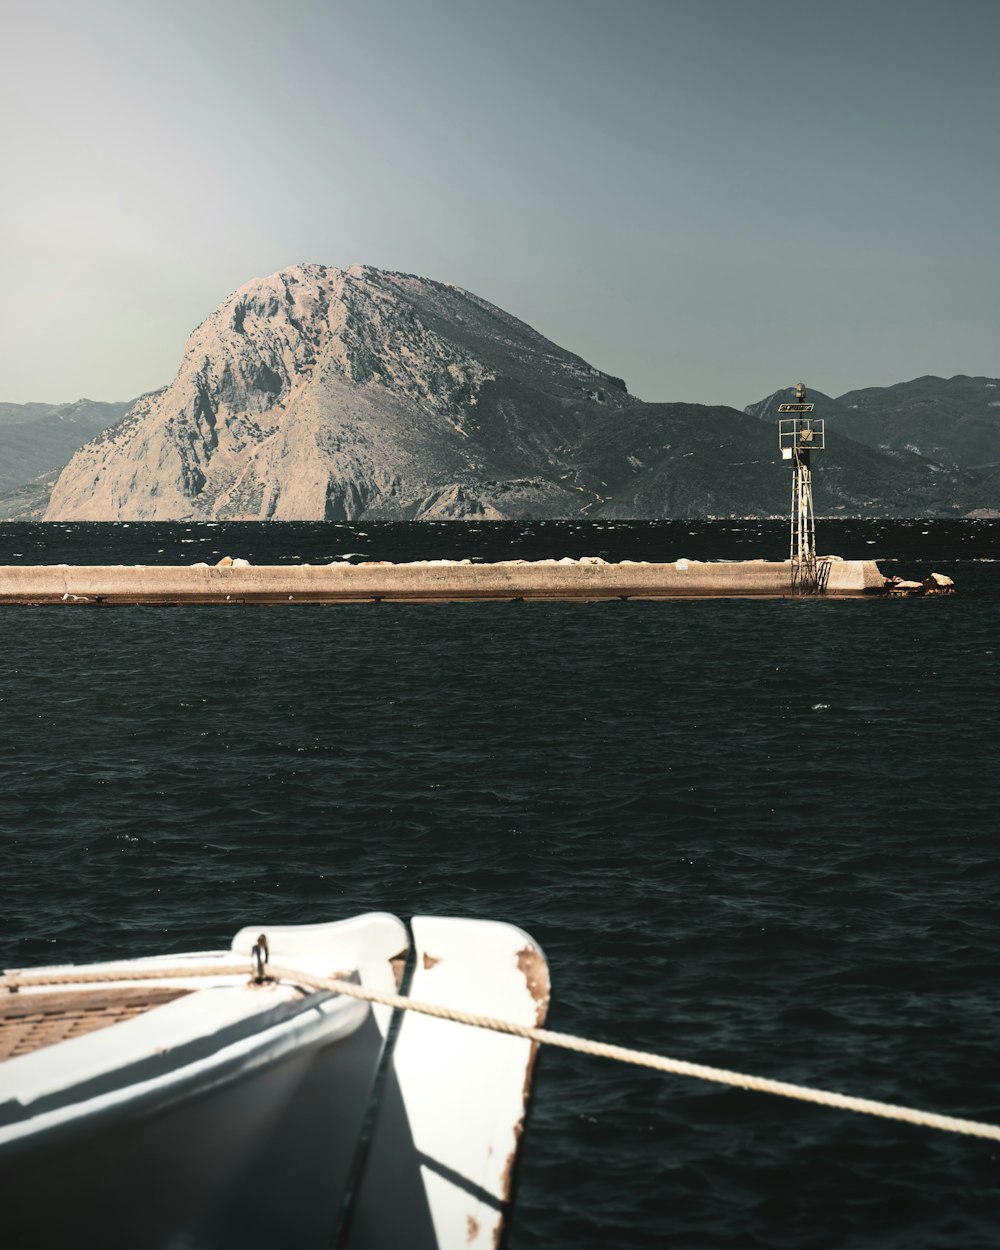 Un bateau dans l’eau avec une montagne en arrière-plan